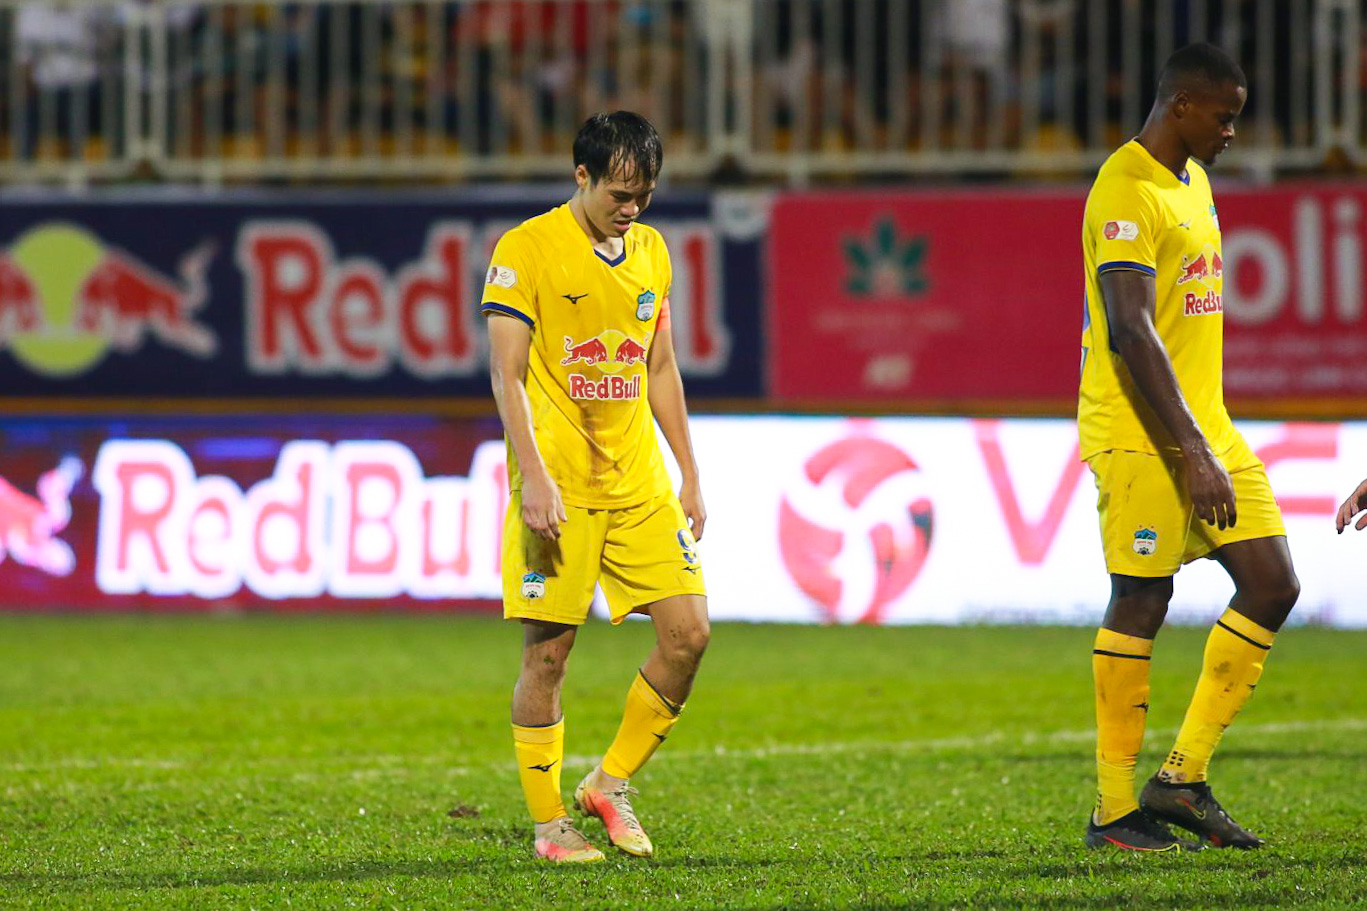 Trận thua 1-2 tối 19.8 trước Hải Phòng khiến Hoàng Anh Gia Lai bị bỏ xa trong cuộc đua vô địch khi khoảng cách giữa họ và đội đầu bảng Hà Nội là 7 điểm nhưng đã chơi nhiều hơn 1 trận.